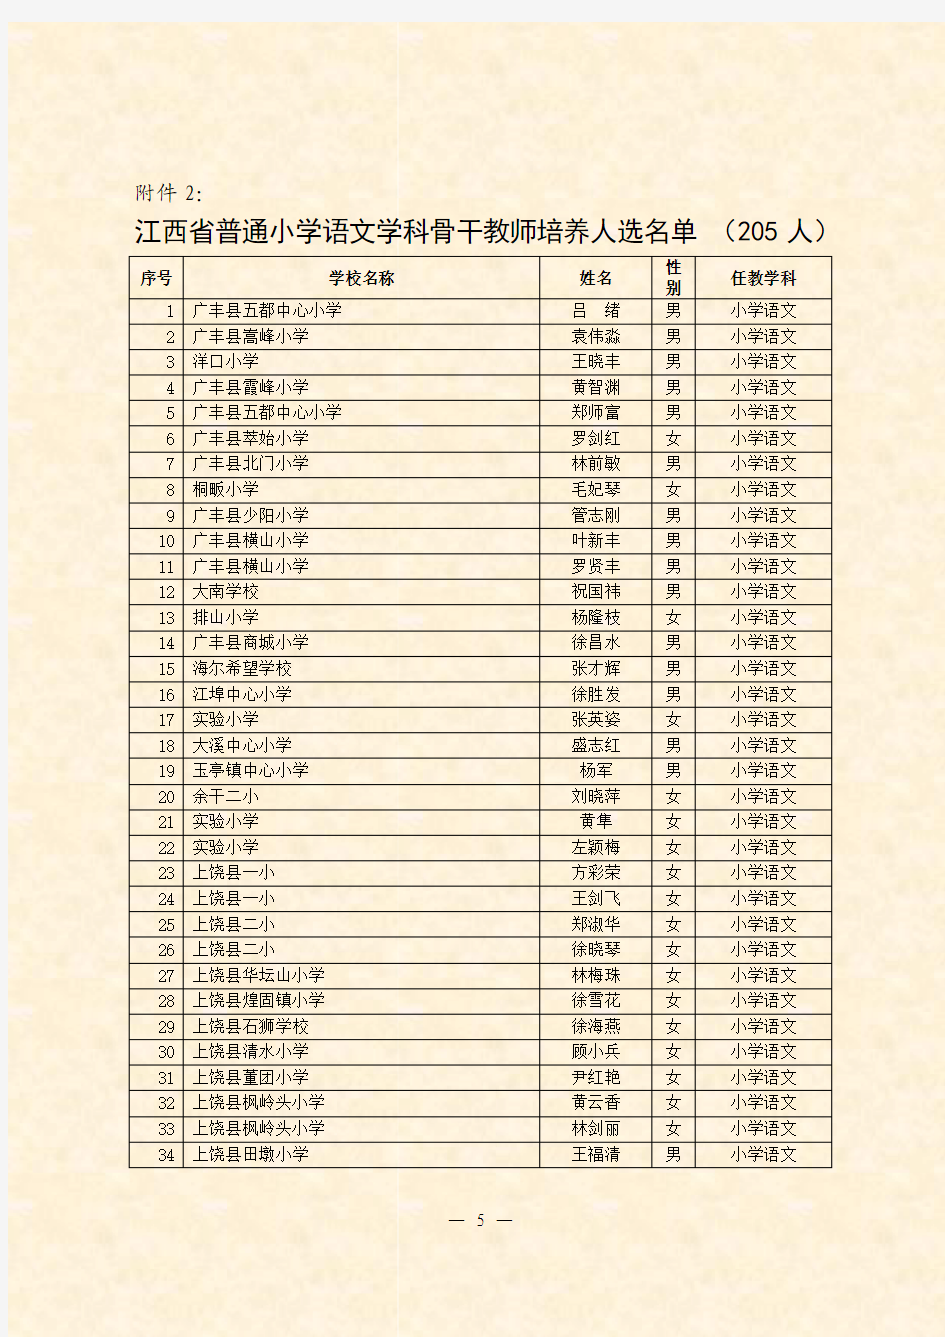 江西省普通小学语文学科骨干教师培养人选名单(205人)